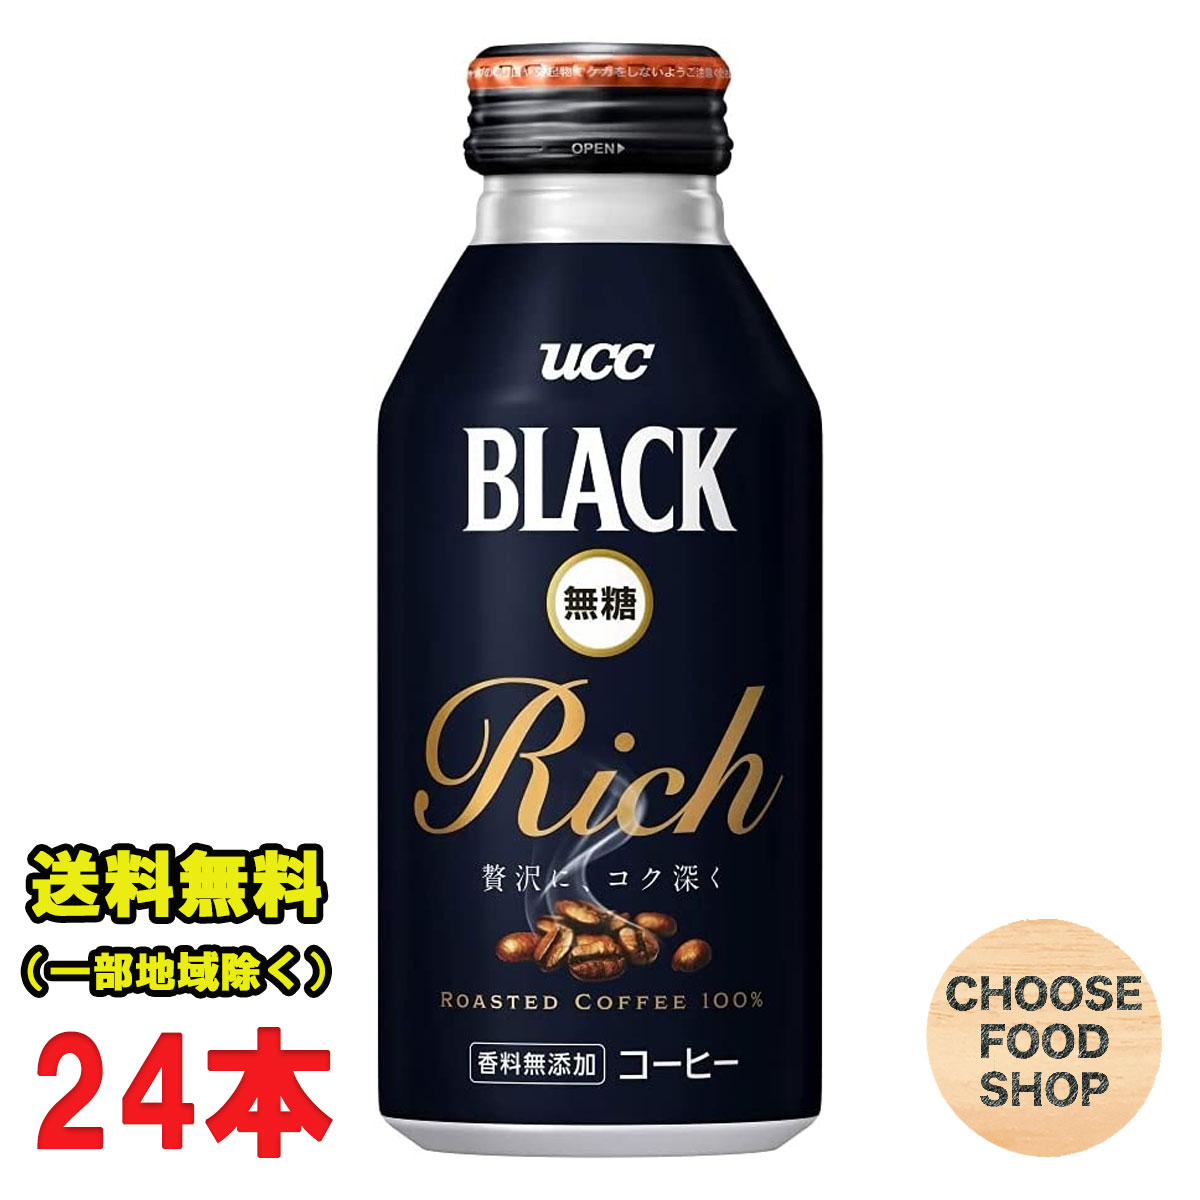 UCC ブラック無糖 Rich 375g ×24本 BLACK リッチ 缶コーヒー まとめ買い 送料無料（北海道 東北 沖縄除く）